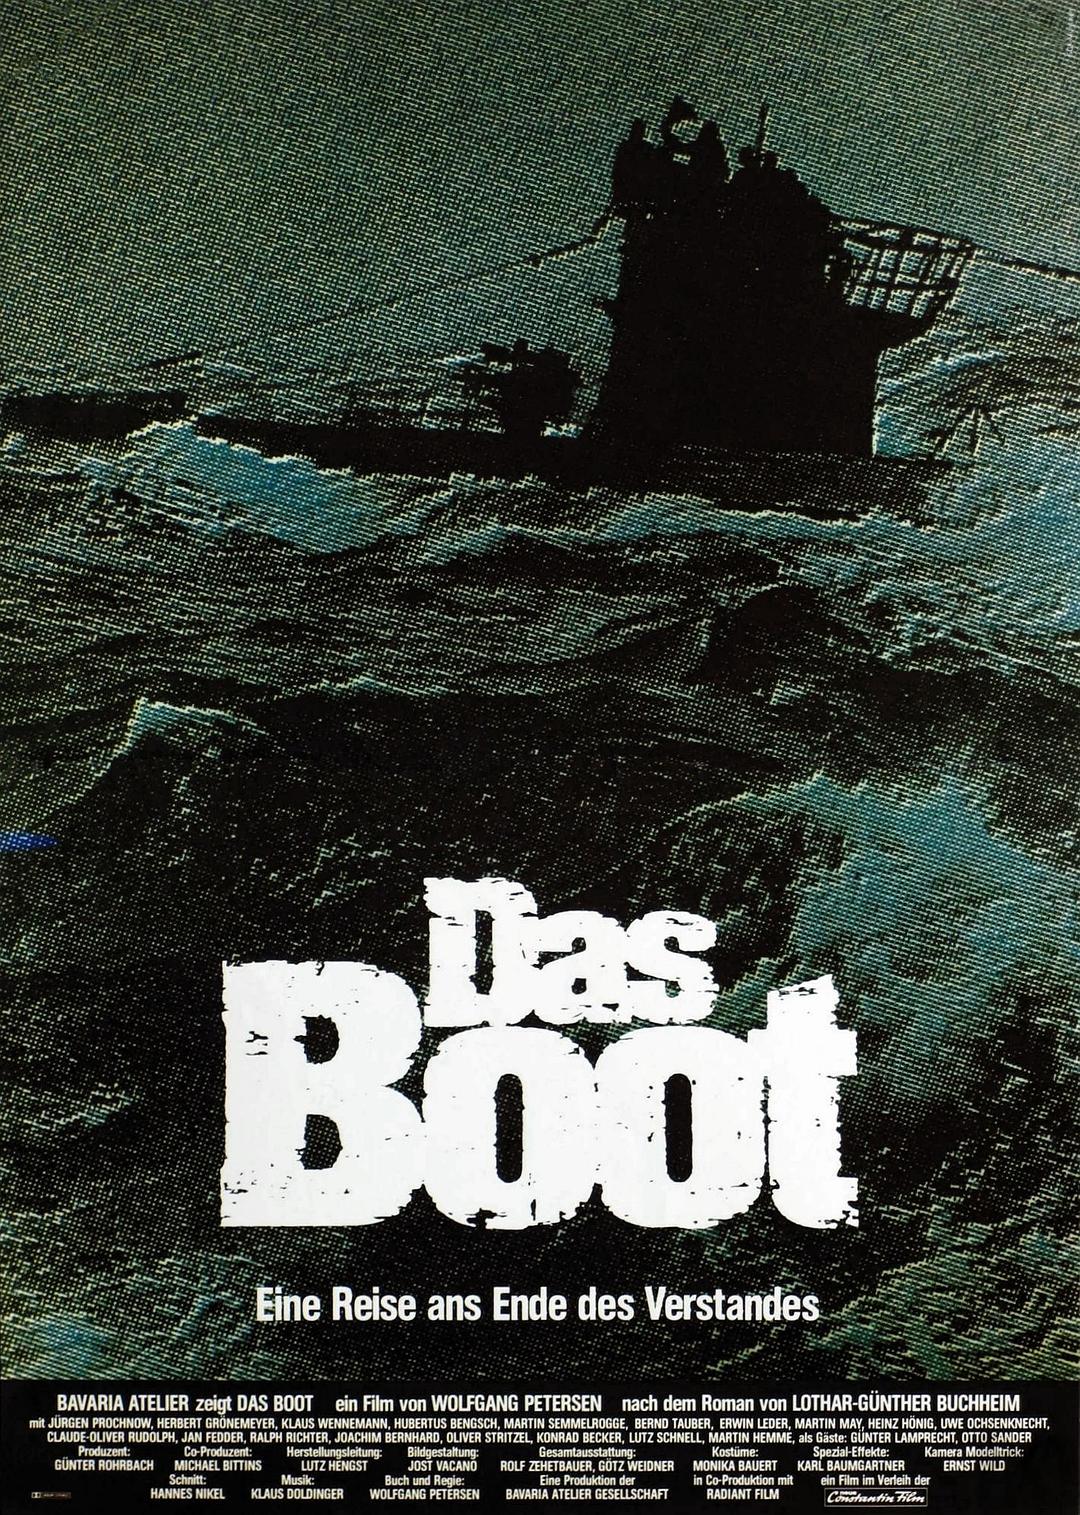 从海底出击 蓝光原盘下载+高清MKV版/潜水艇 / 潜艇风暴 / 特种任务 / 特殊任务 / 紧急下潜 / U潜艇96 / 从海底出发 / 船 / The Boat 1981 Das Boot 62.7G